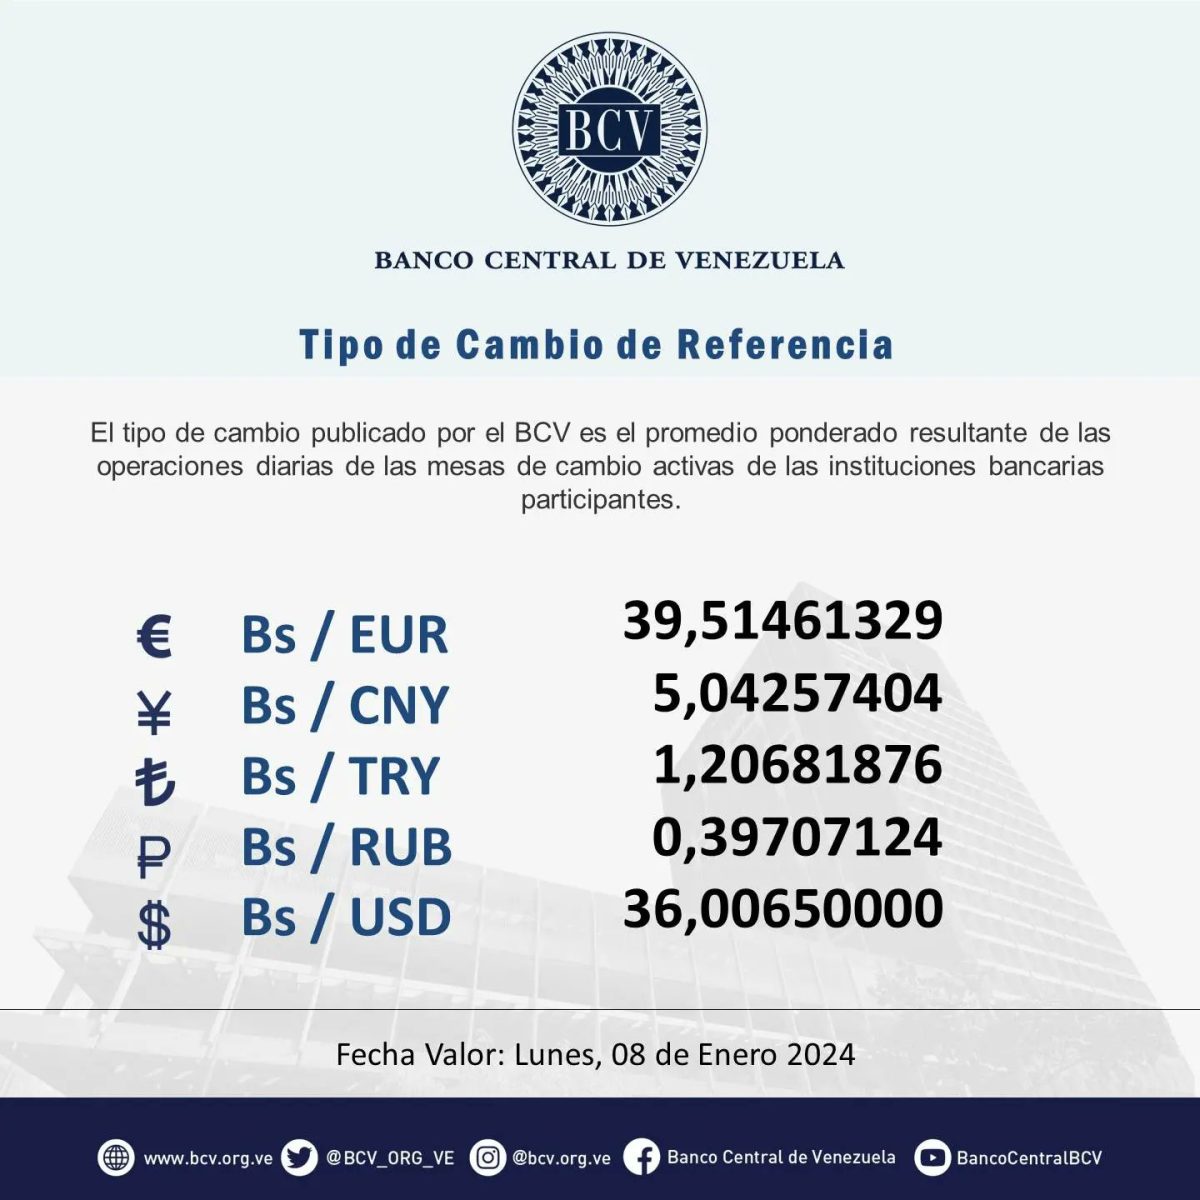 dolartoday en venezuela precio del dolar este lunes 8 de enero de 2024 laverdaddemonagas.com bcv2323